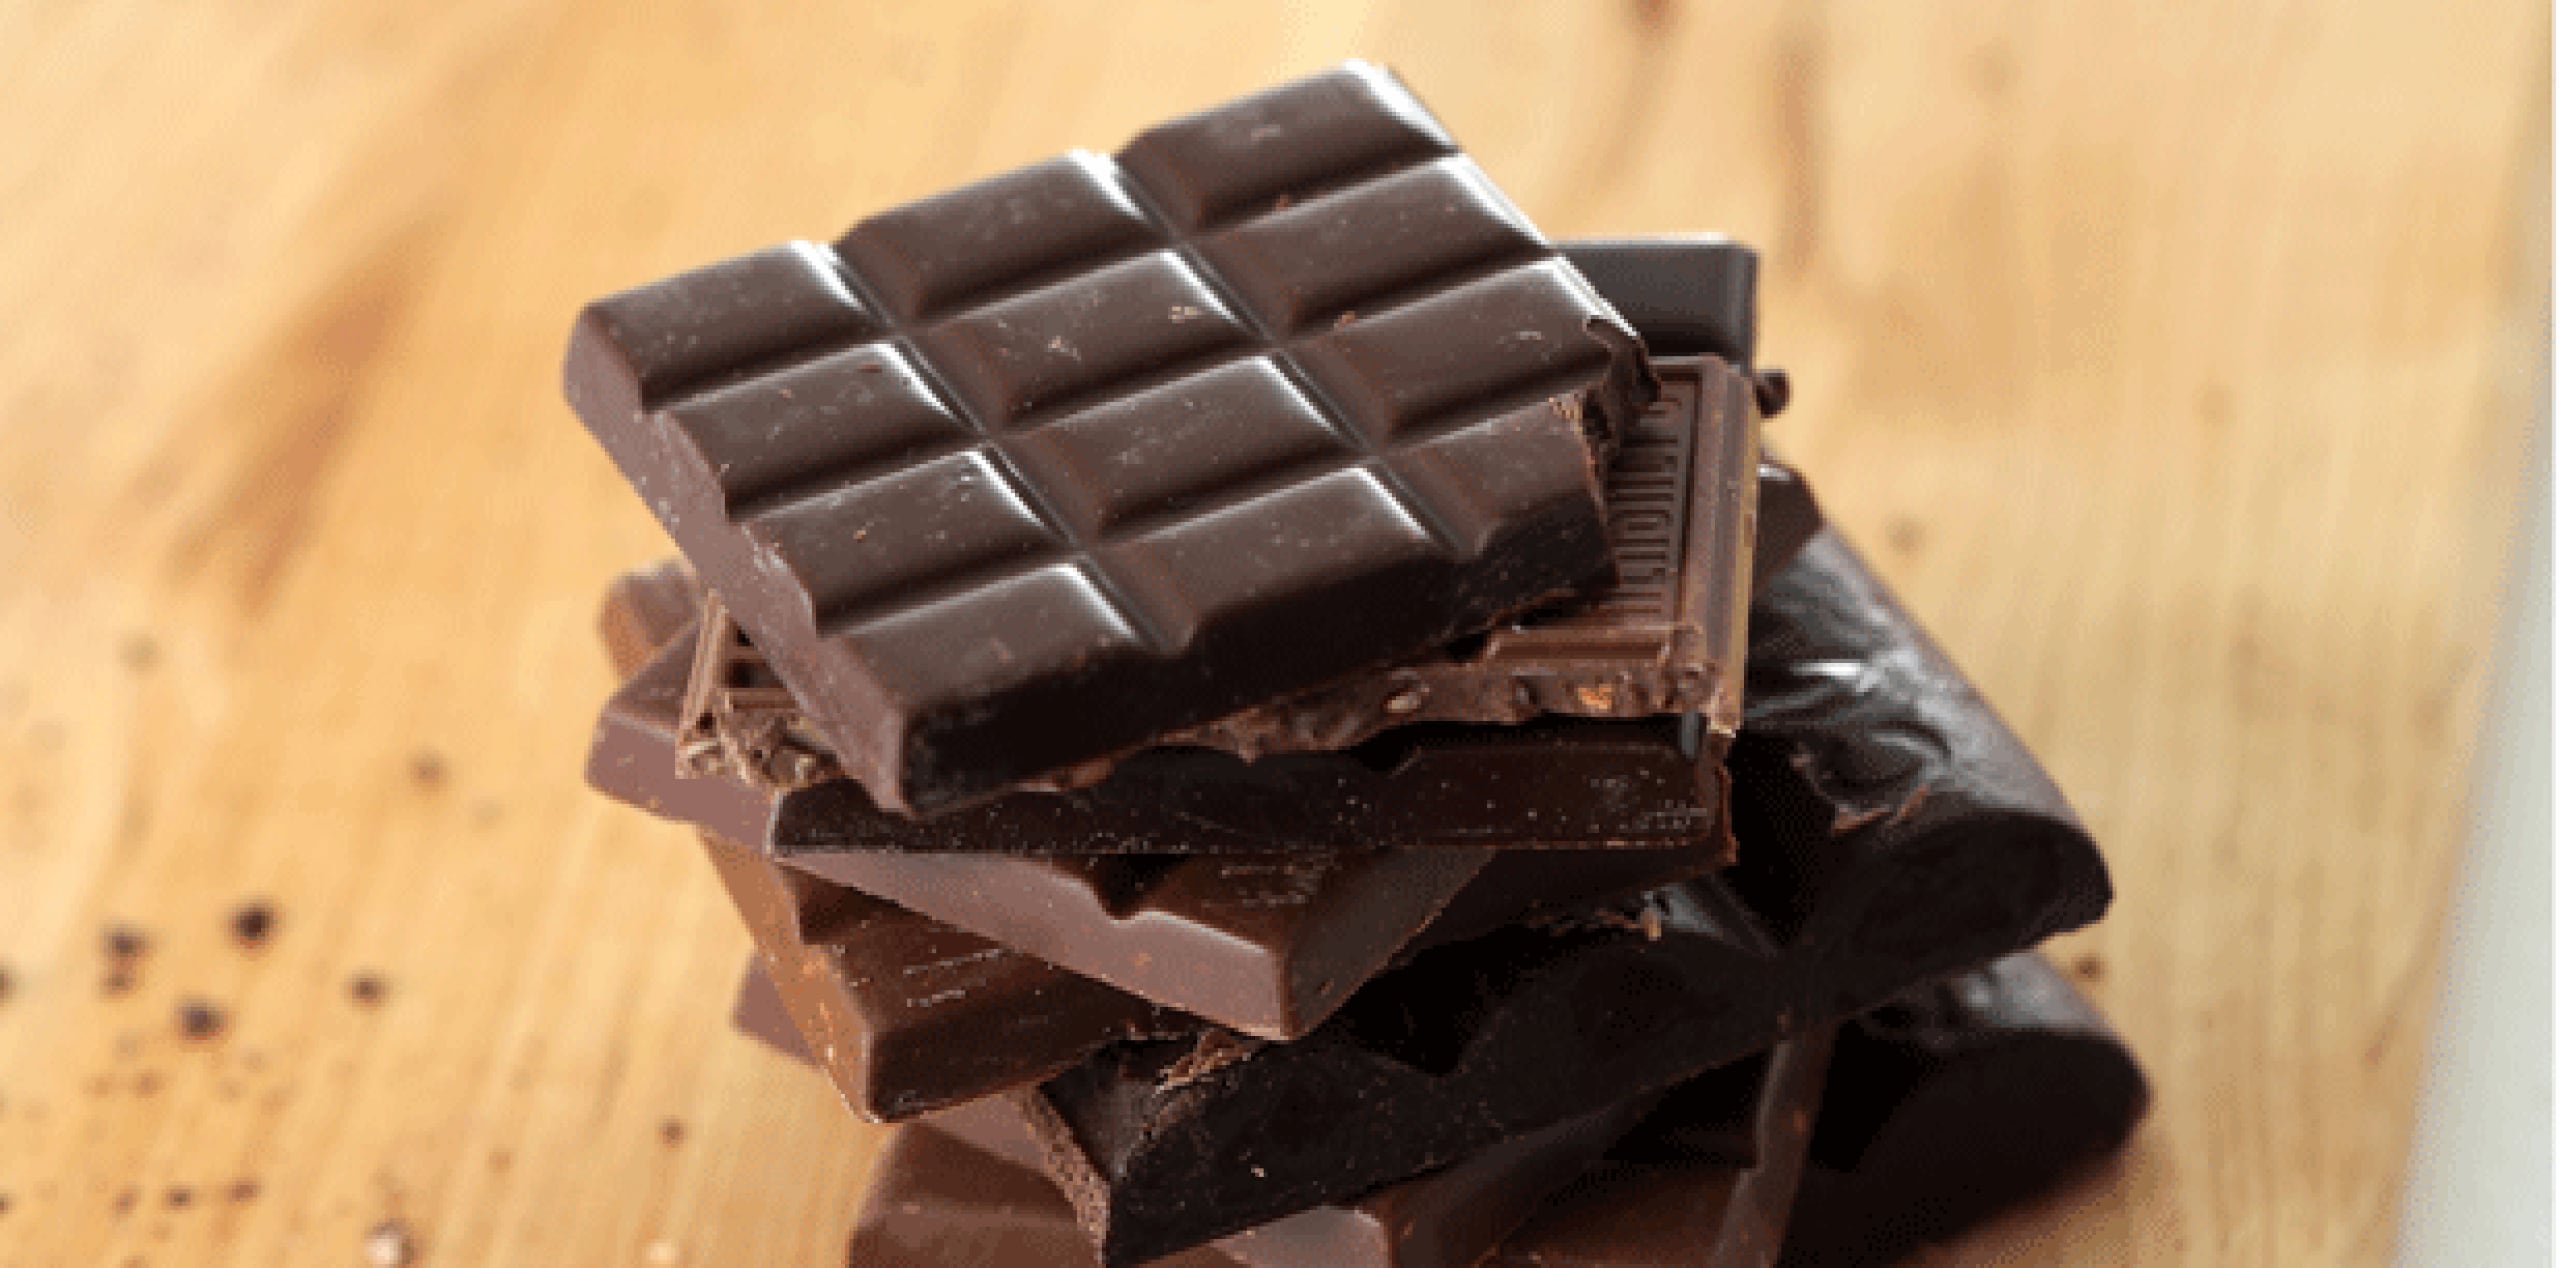 El chocolate contiene una sustancia llamada feniletilamina que provoca euforia mediante la liberación de la dopamina. Además, el calcio que contiene la leche favorece a la transmisión nerviosa y te vuelve más sensible al tacto. (Archivo)